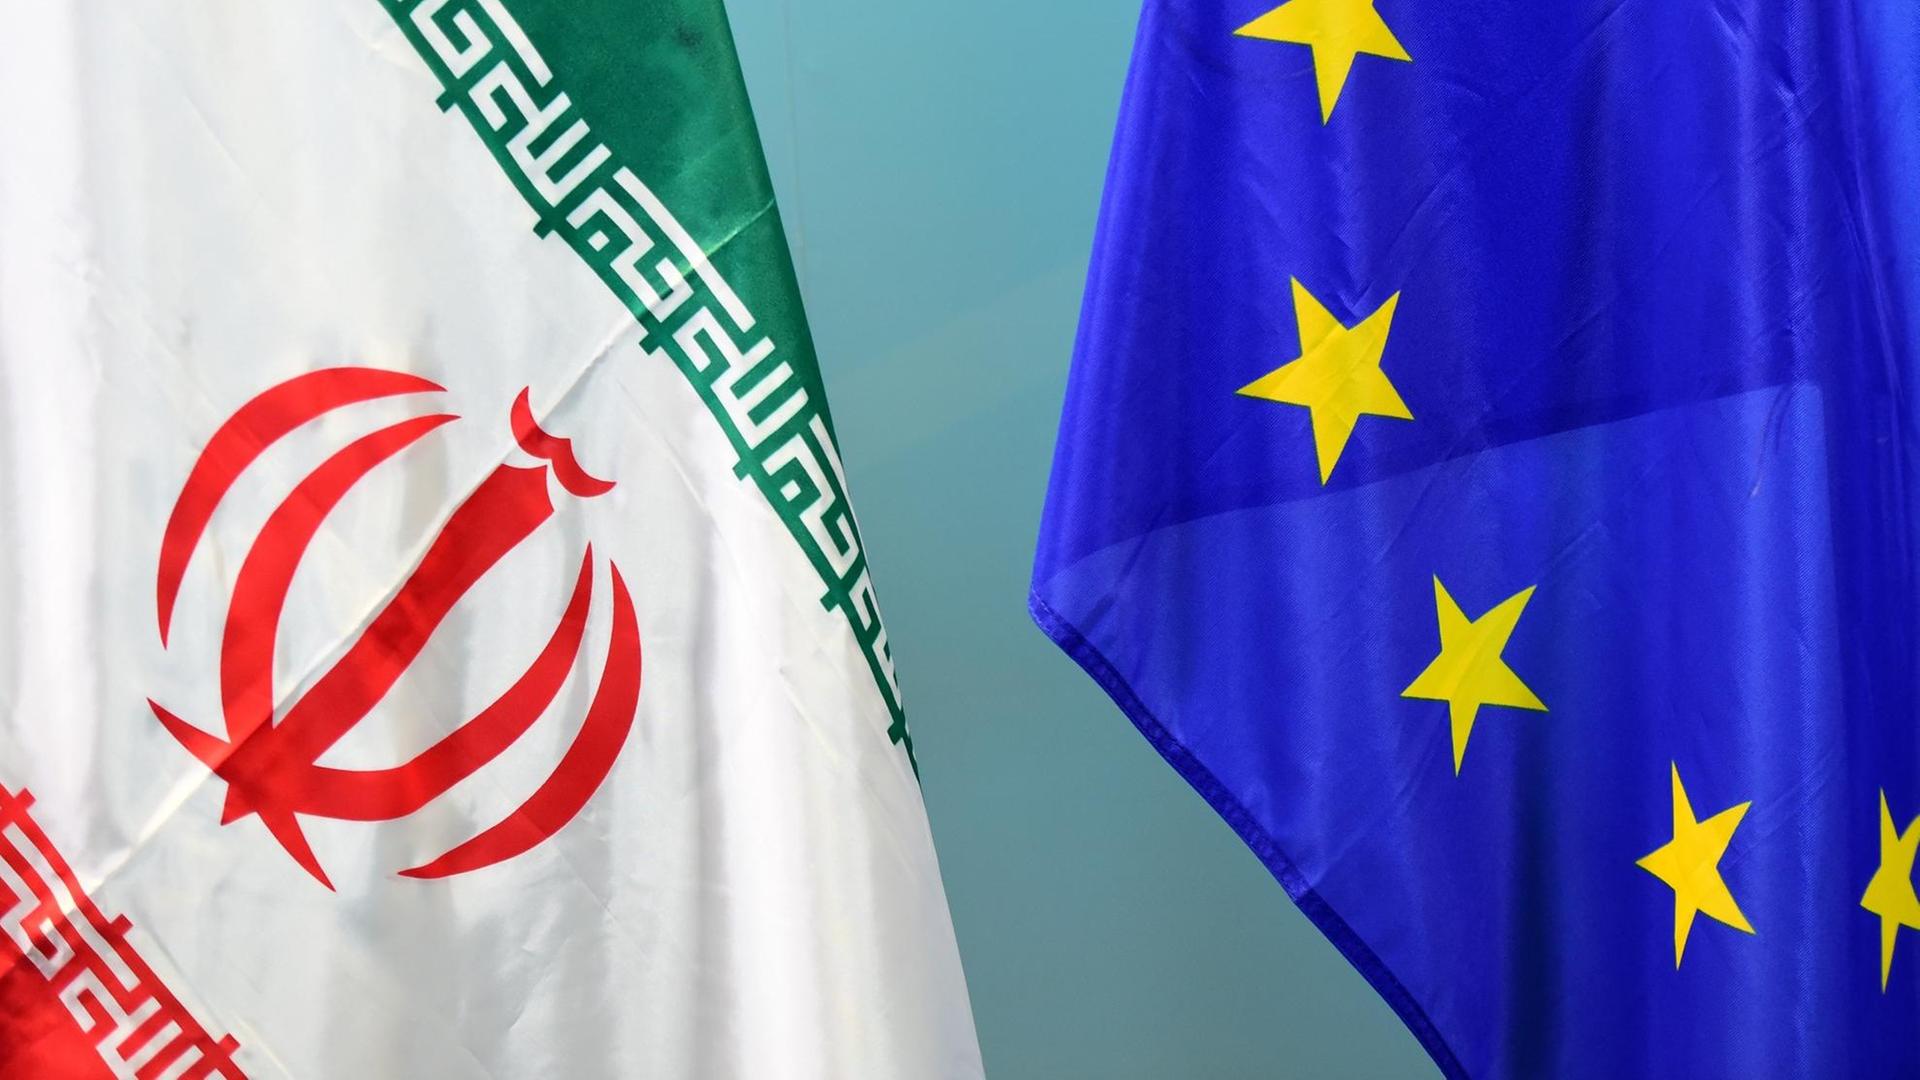 Die Fahnen der Europäischen Union und des Iran hängen nebeneinander.